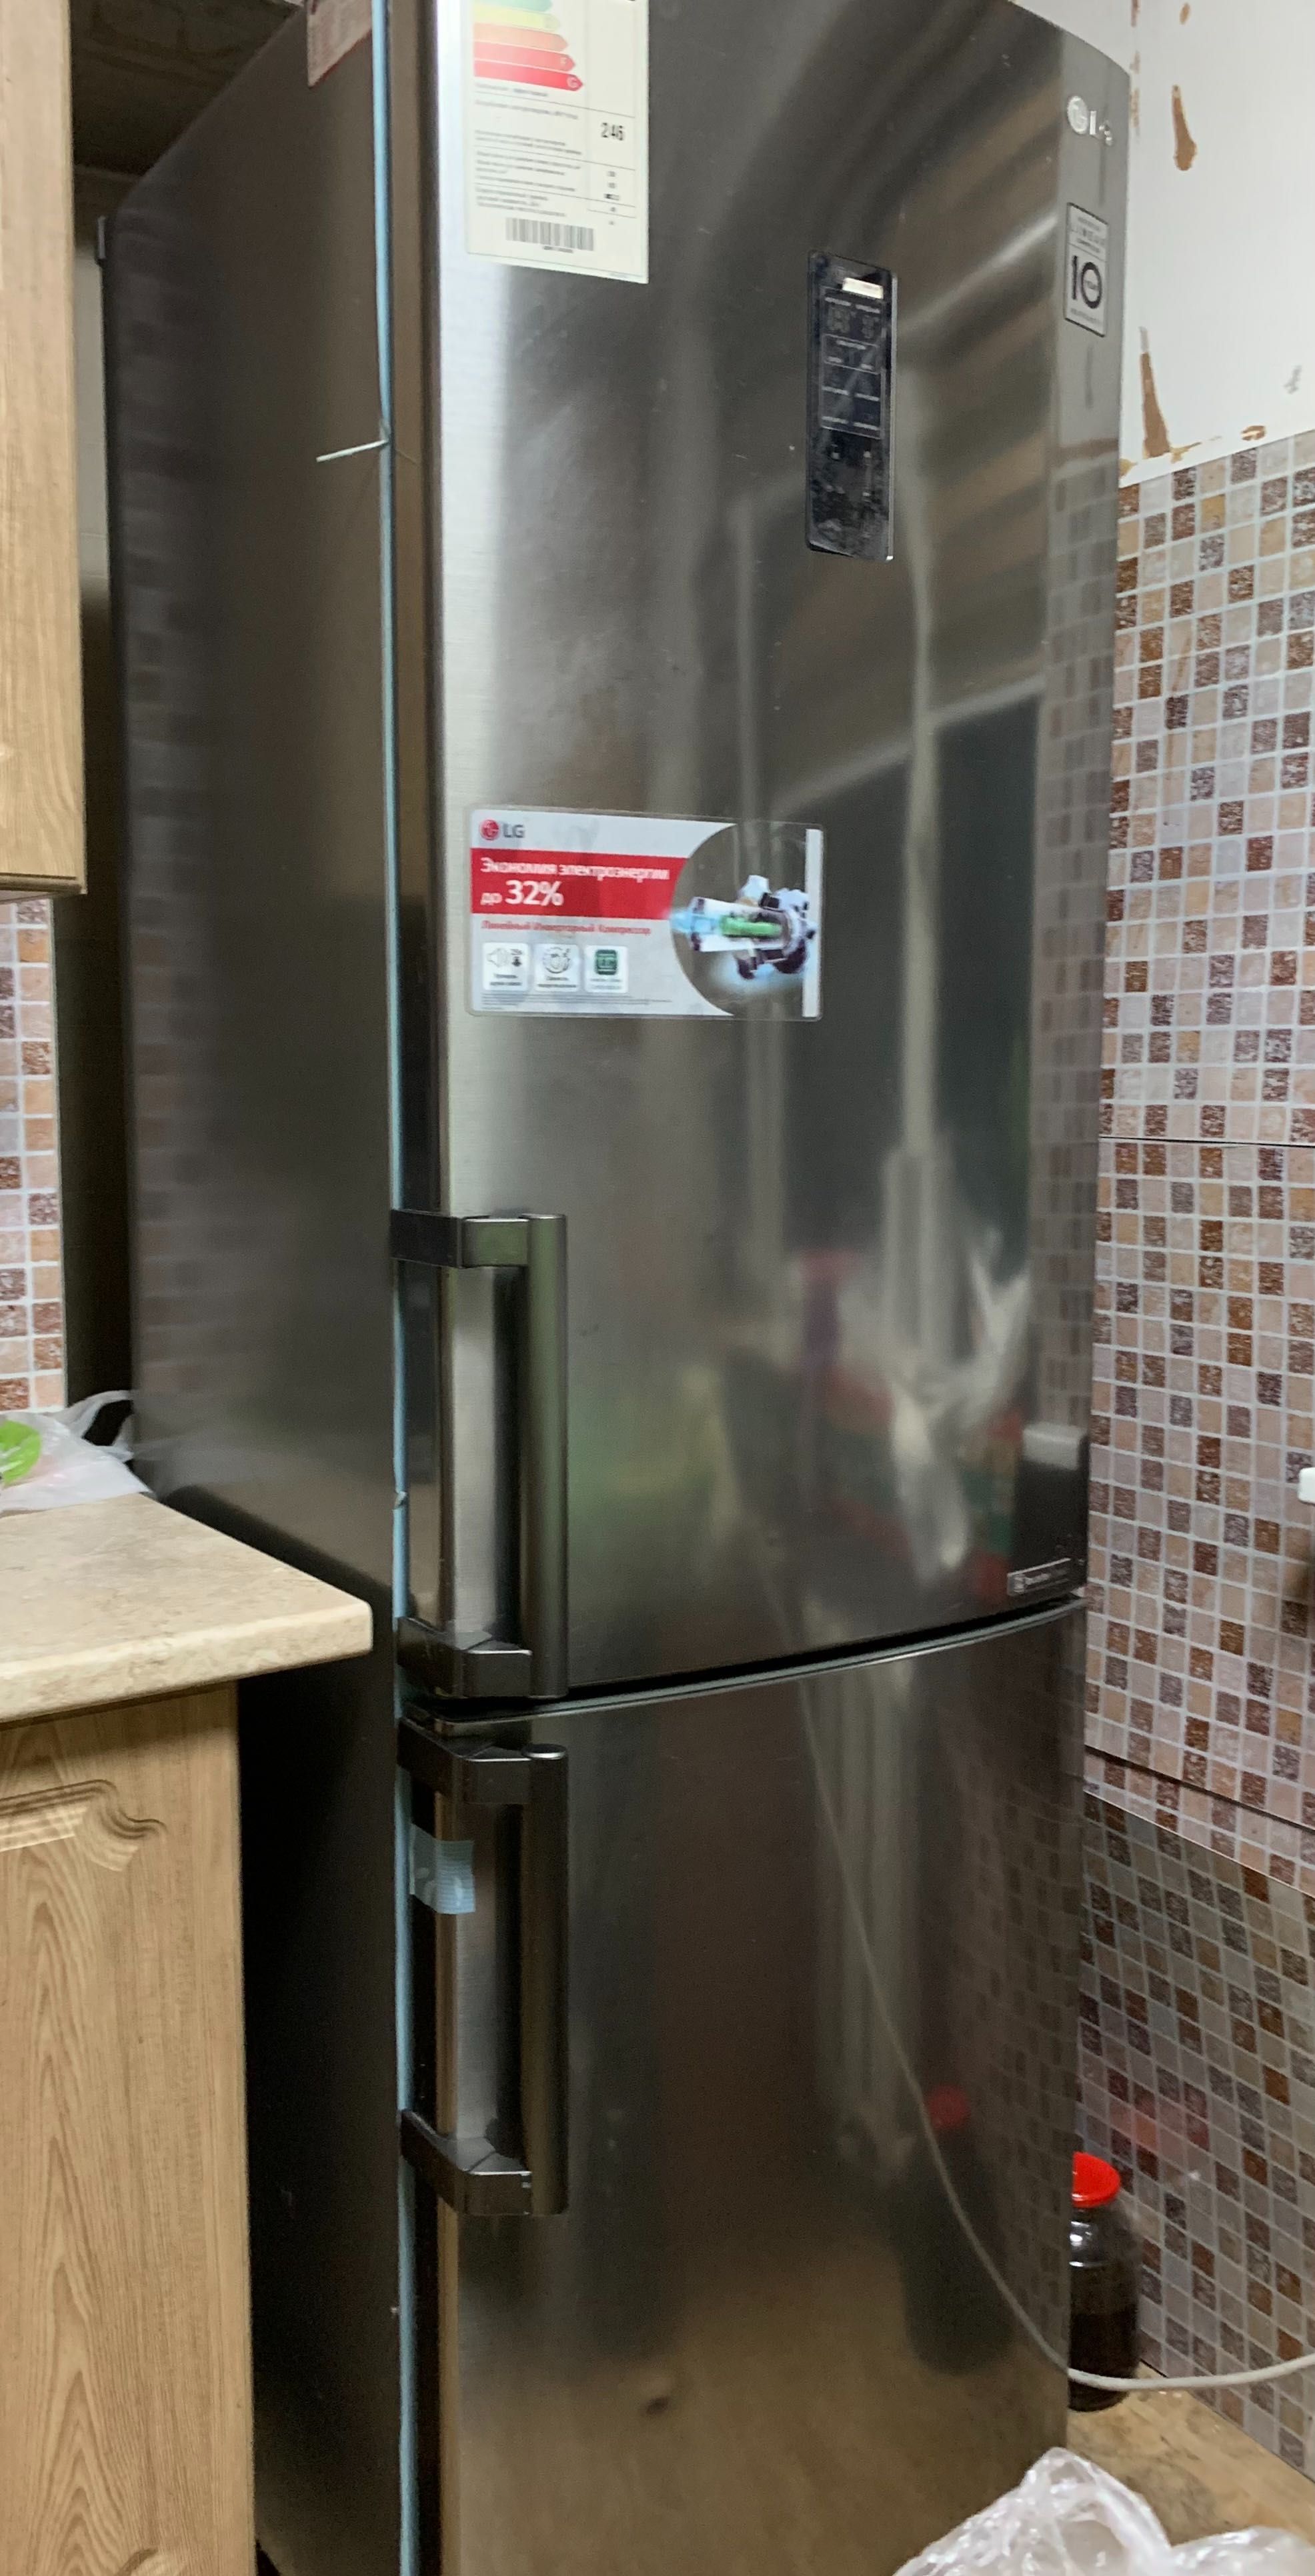 Холодильник в отличном состоянии